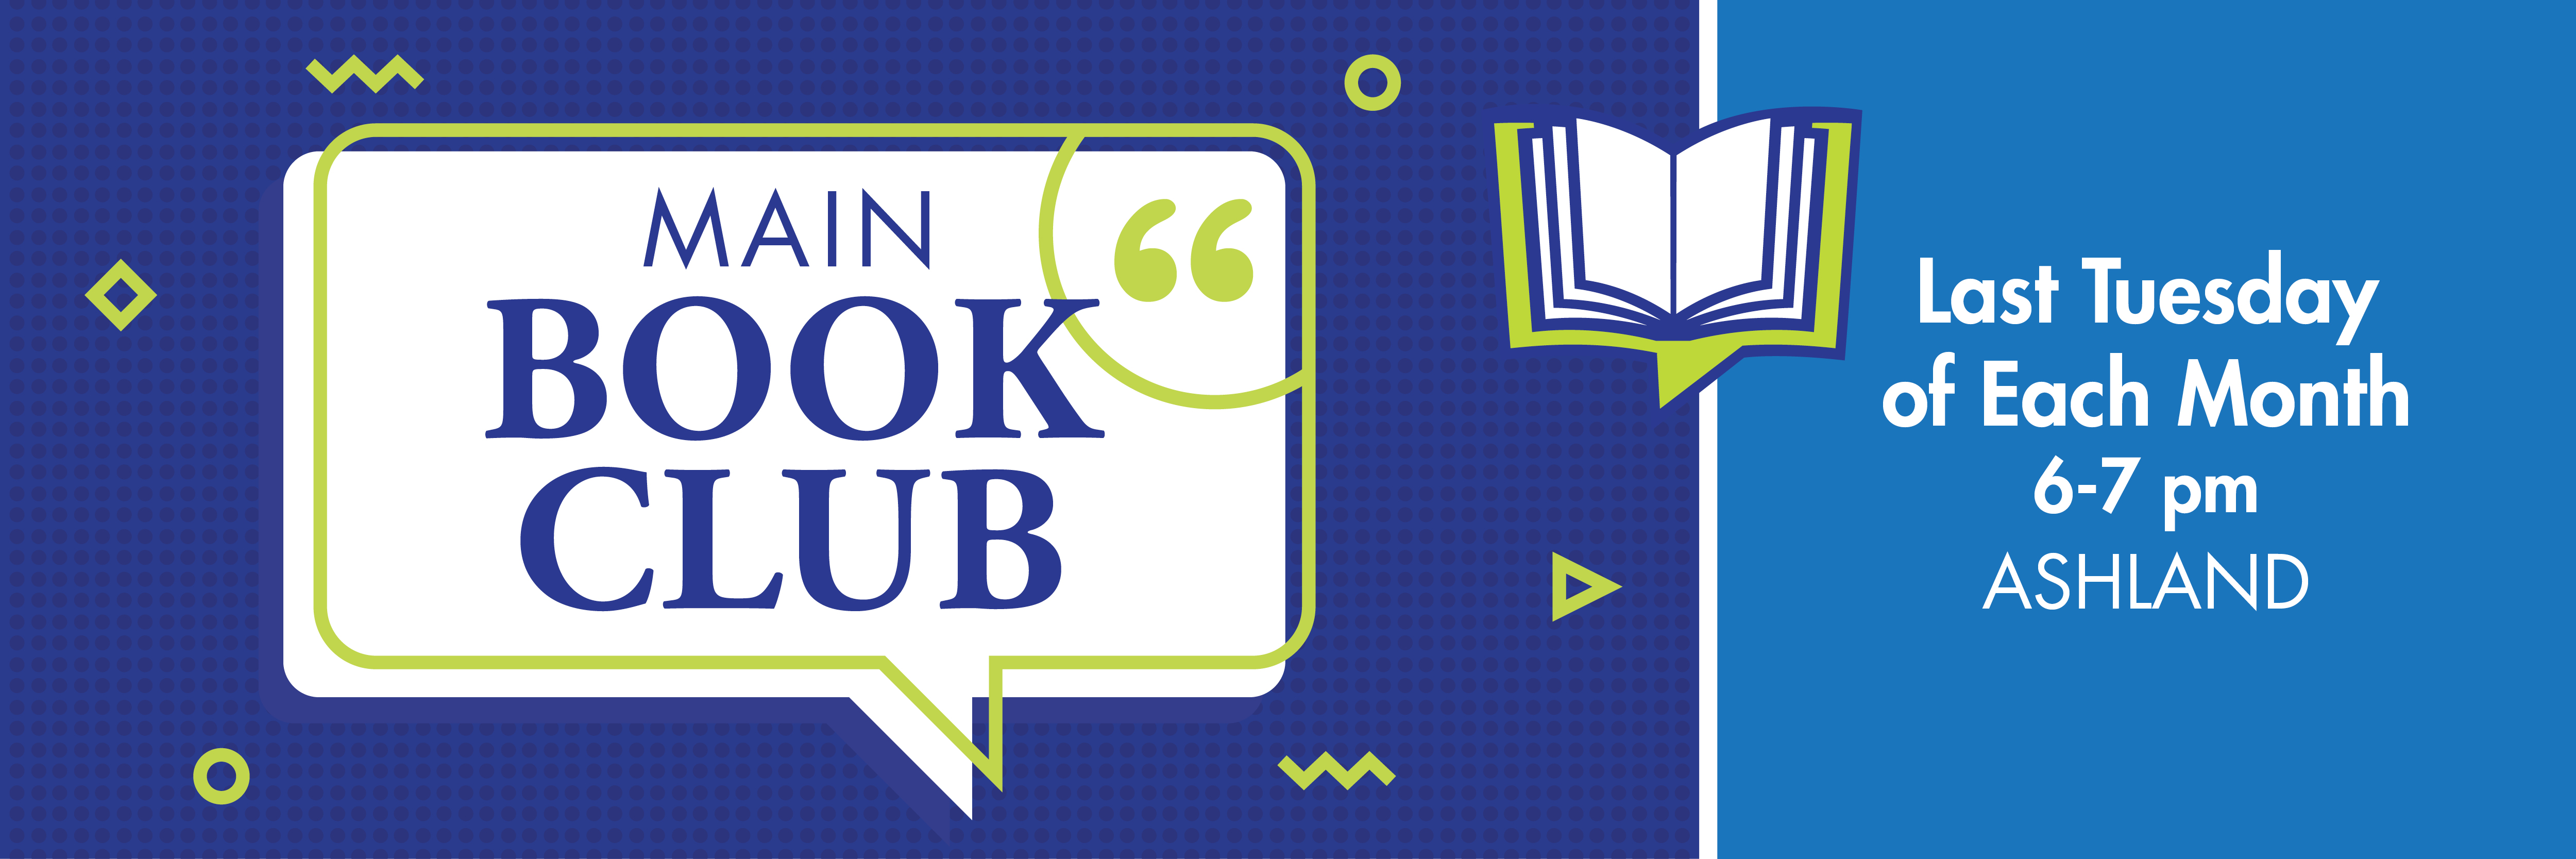 Main Book Club